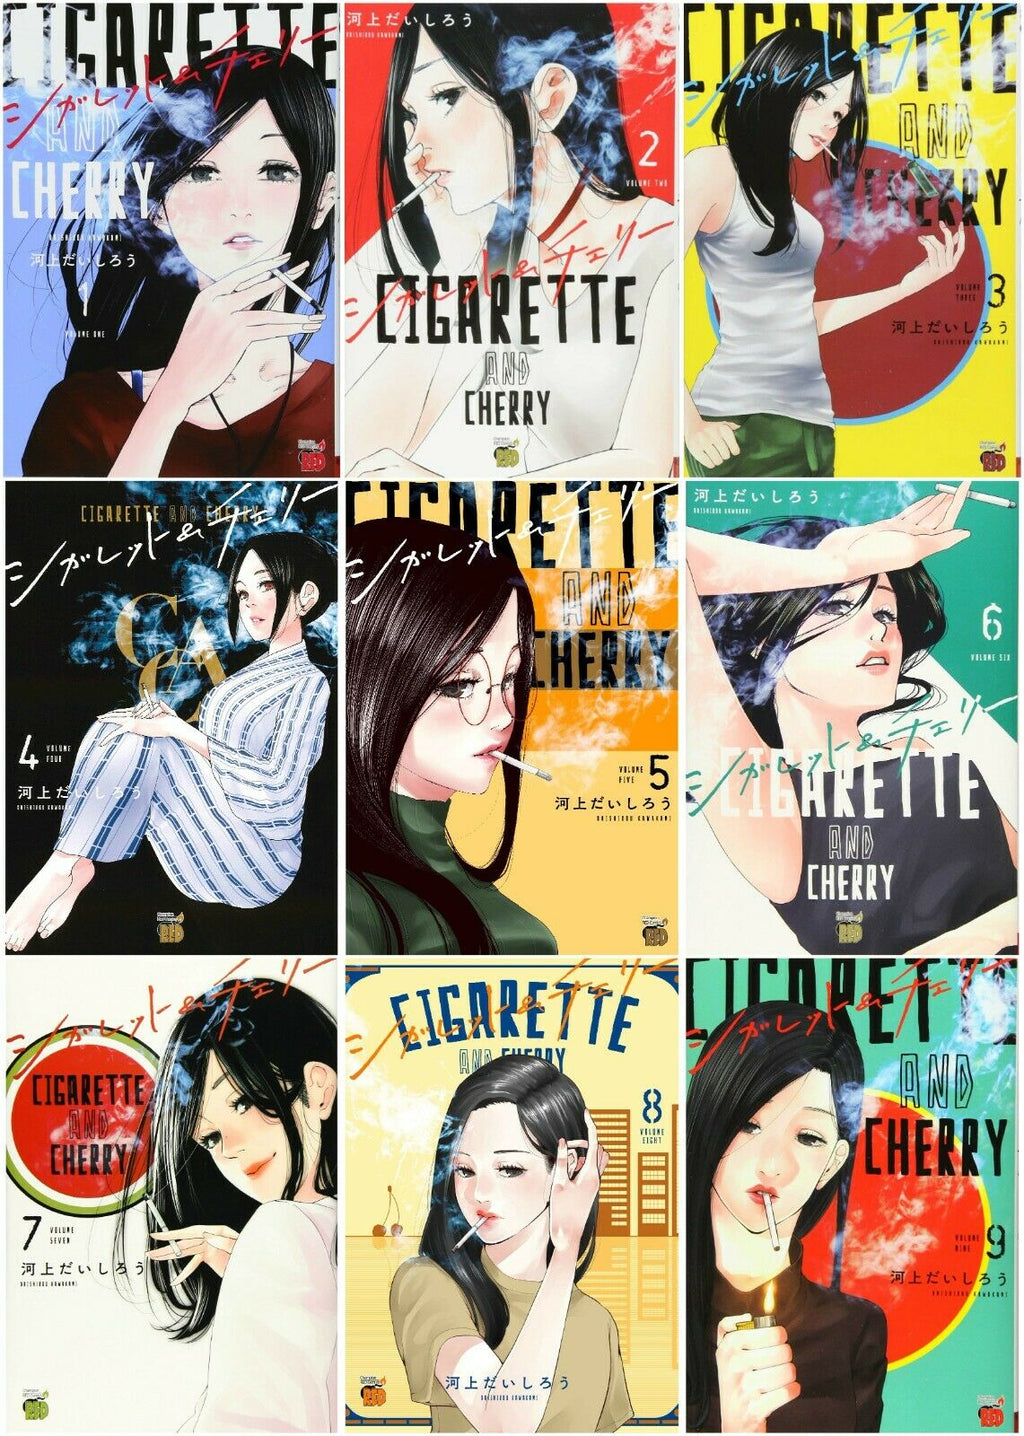 Ashita Watashi wa Dareka no Kanojo Vol.1-7 Comic Set Manga in Japanese